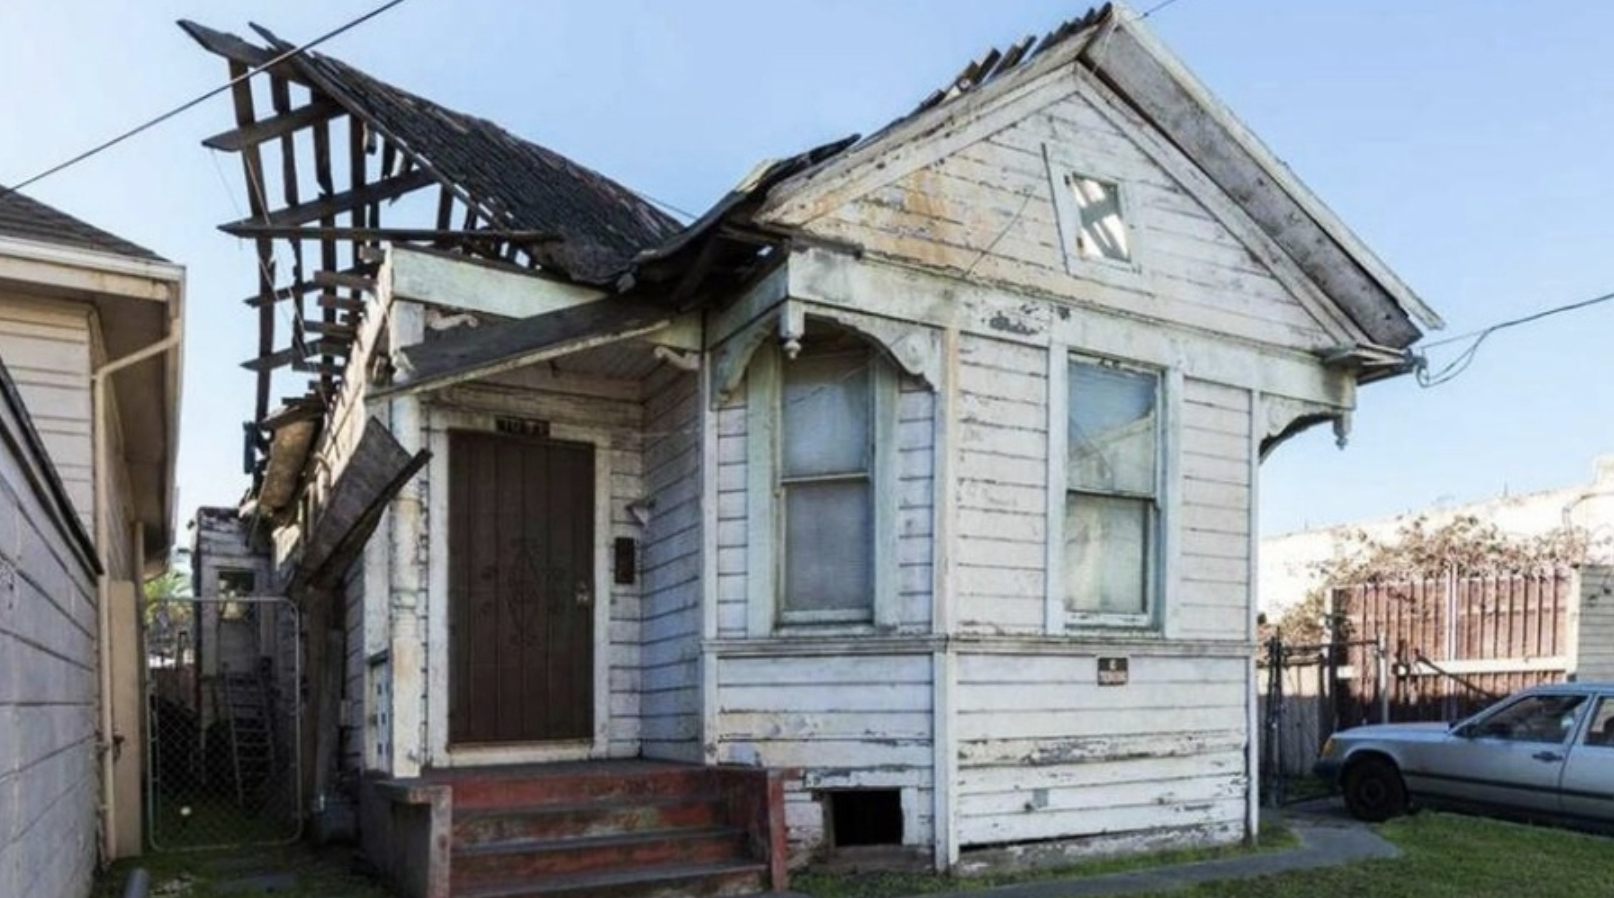 KSBW | Mar 2018 | Uninhabitable Oakland house hits market for $399,000